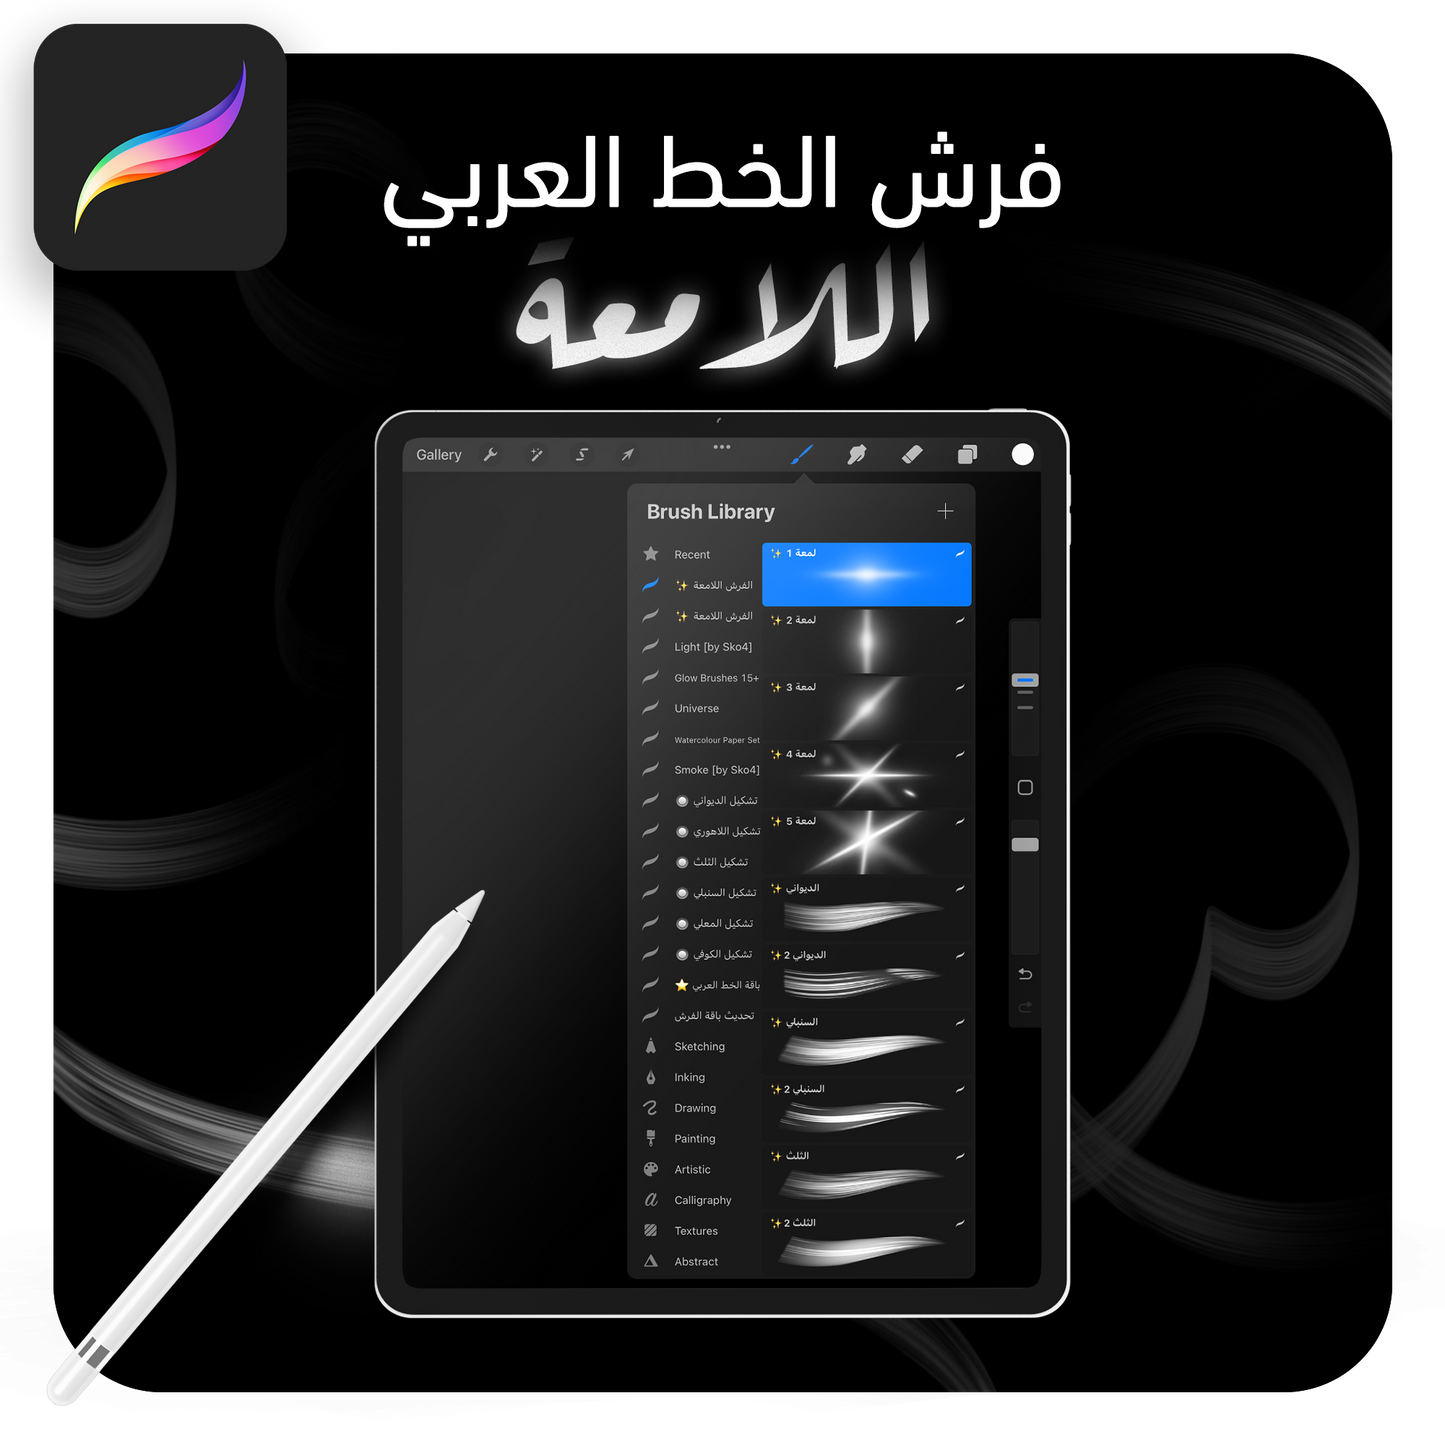 فرش خط عربي لامعة تعمل على تطبيق بروكريت عبر الآيباد مقدمة من متجر آرت سلة